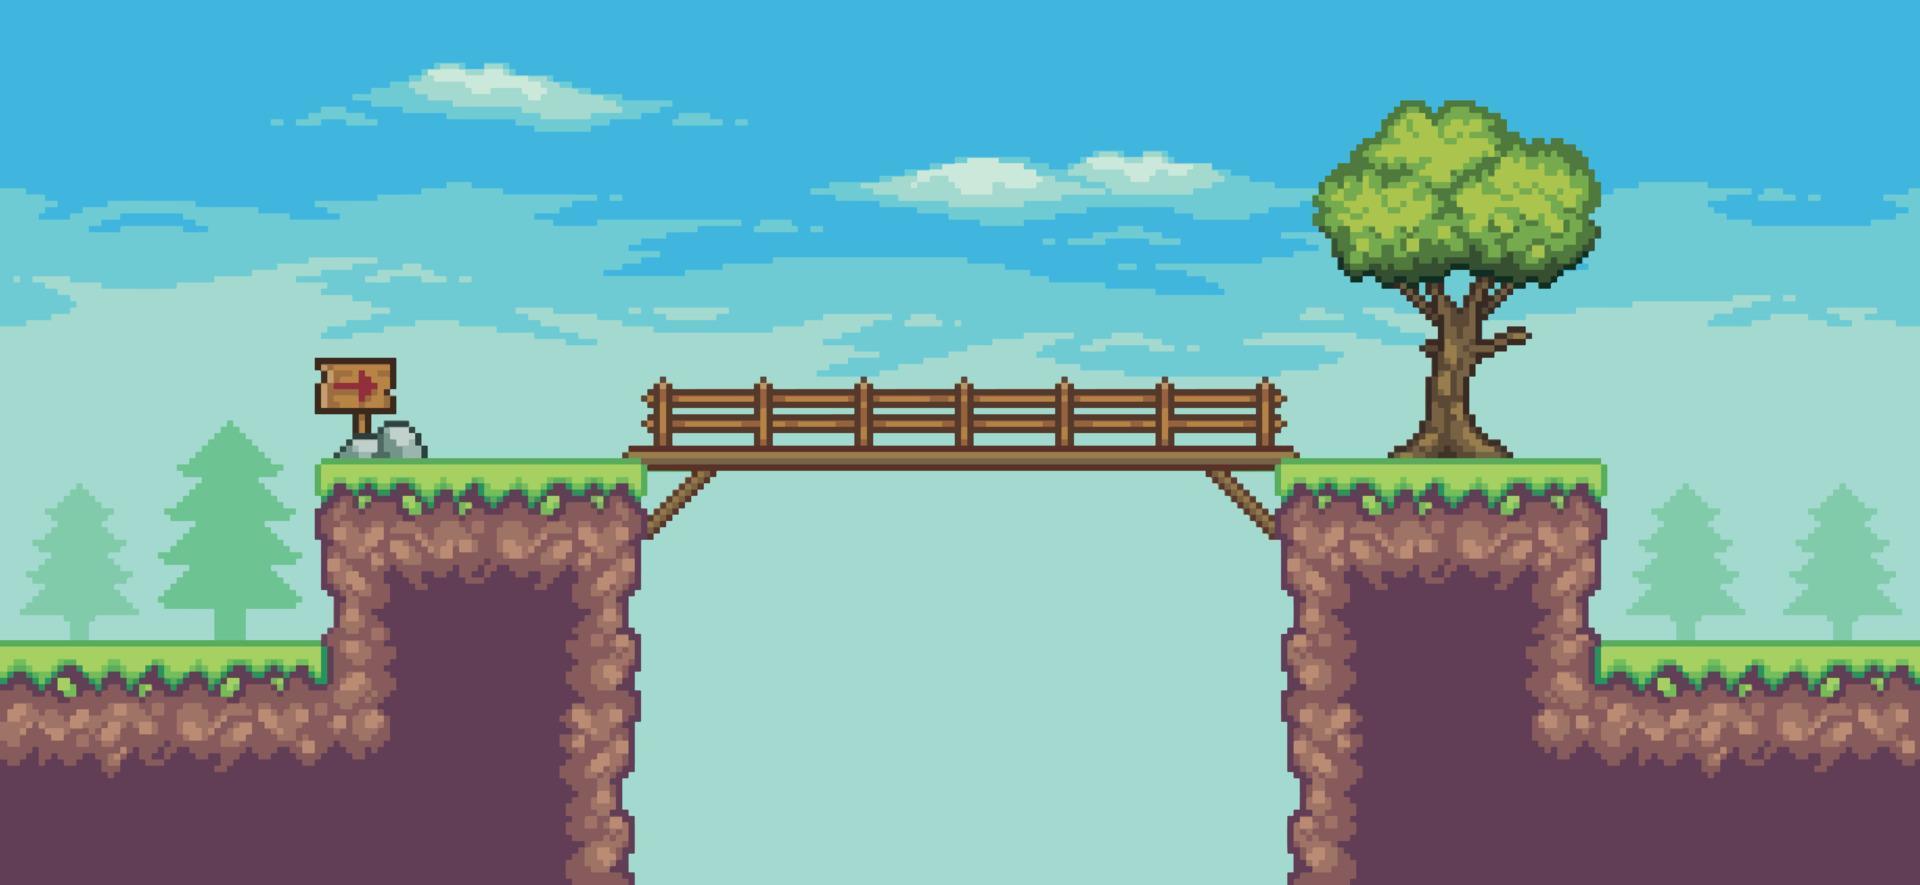 pixelkonst arkadspelscen med träd, bro, träskiva och moln 8 bitars vektorbakgrund vektor